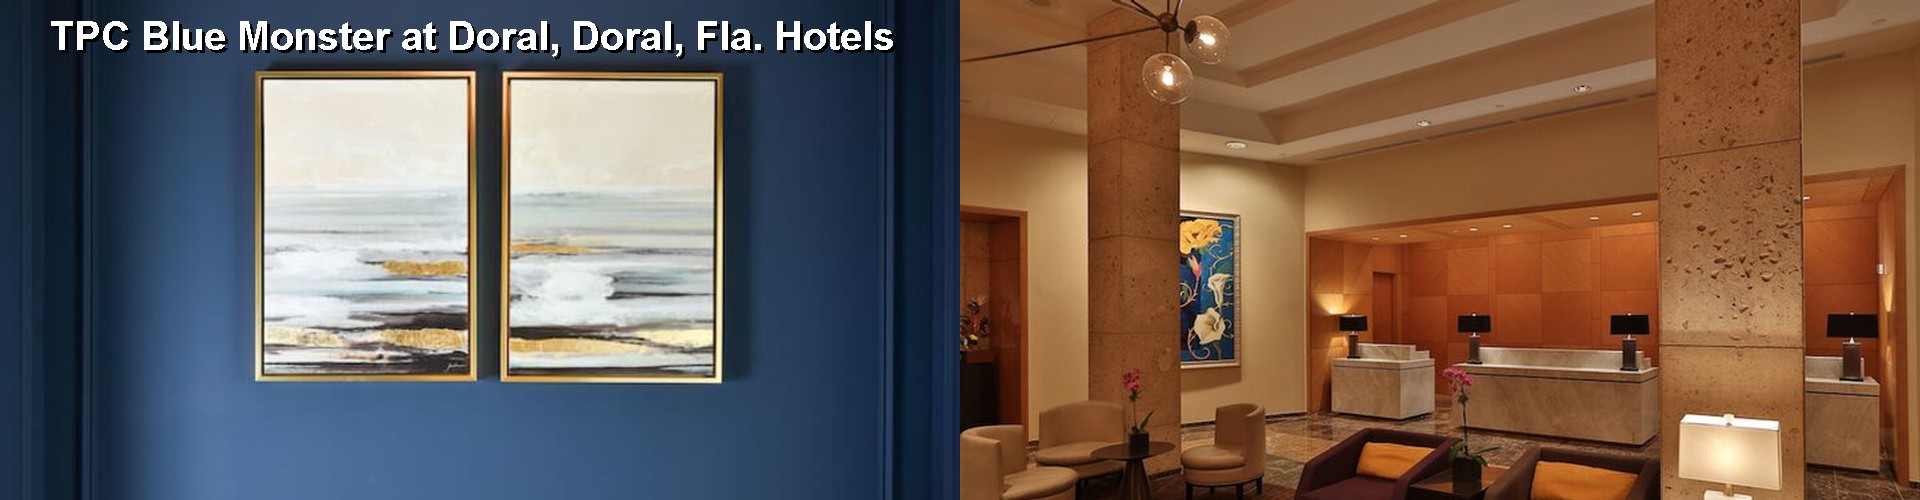 5 Best Hotels near TPC Blue Monster at Doral, Doral, Fla.